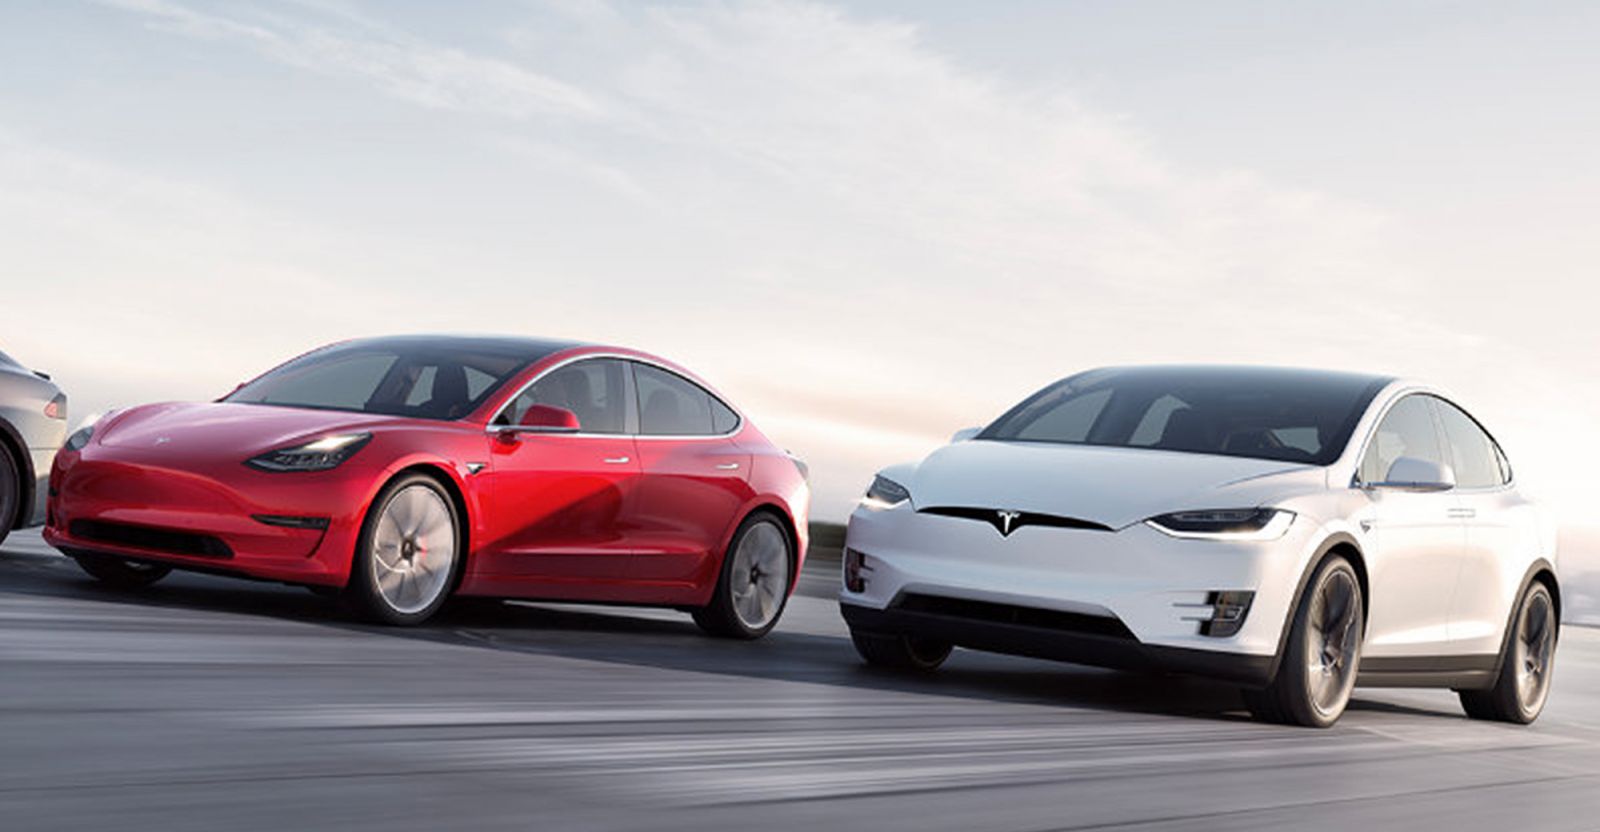 BYD đã vượt qua Tesla để trở thành nhà sản xuất ô tô chạy điện phổ biến nhất trên thị trường trong năm ngoái.